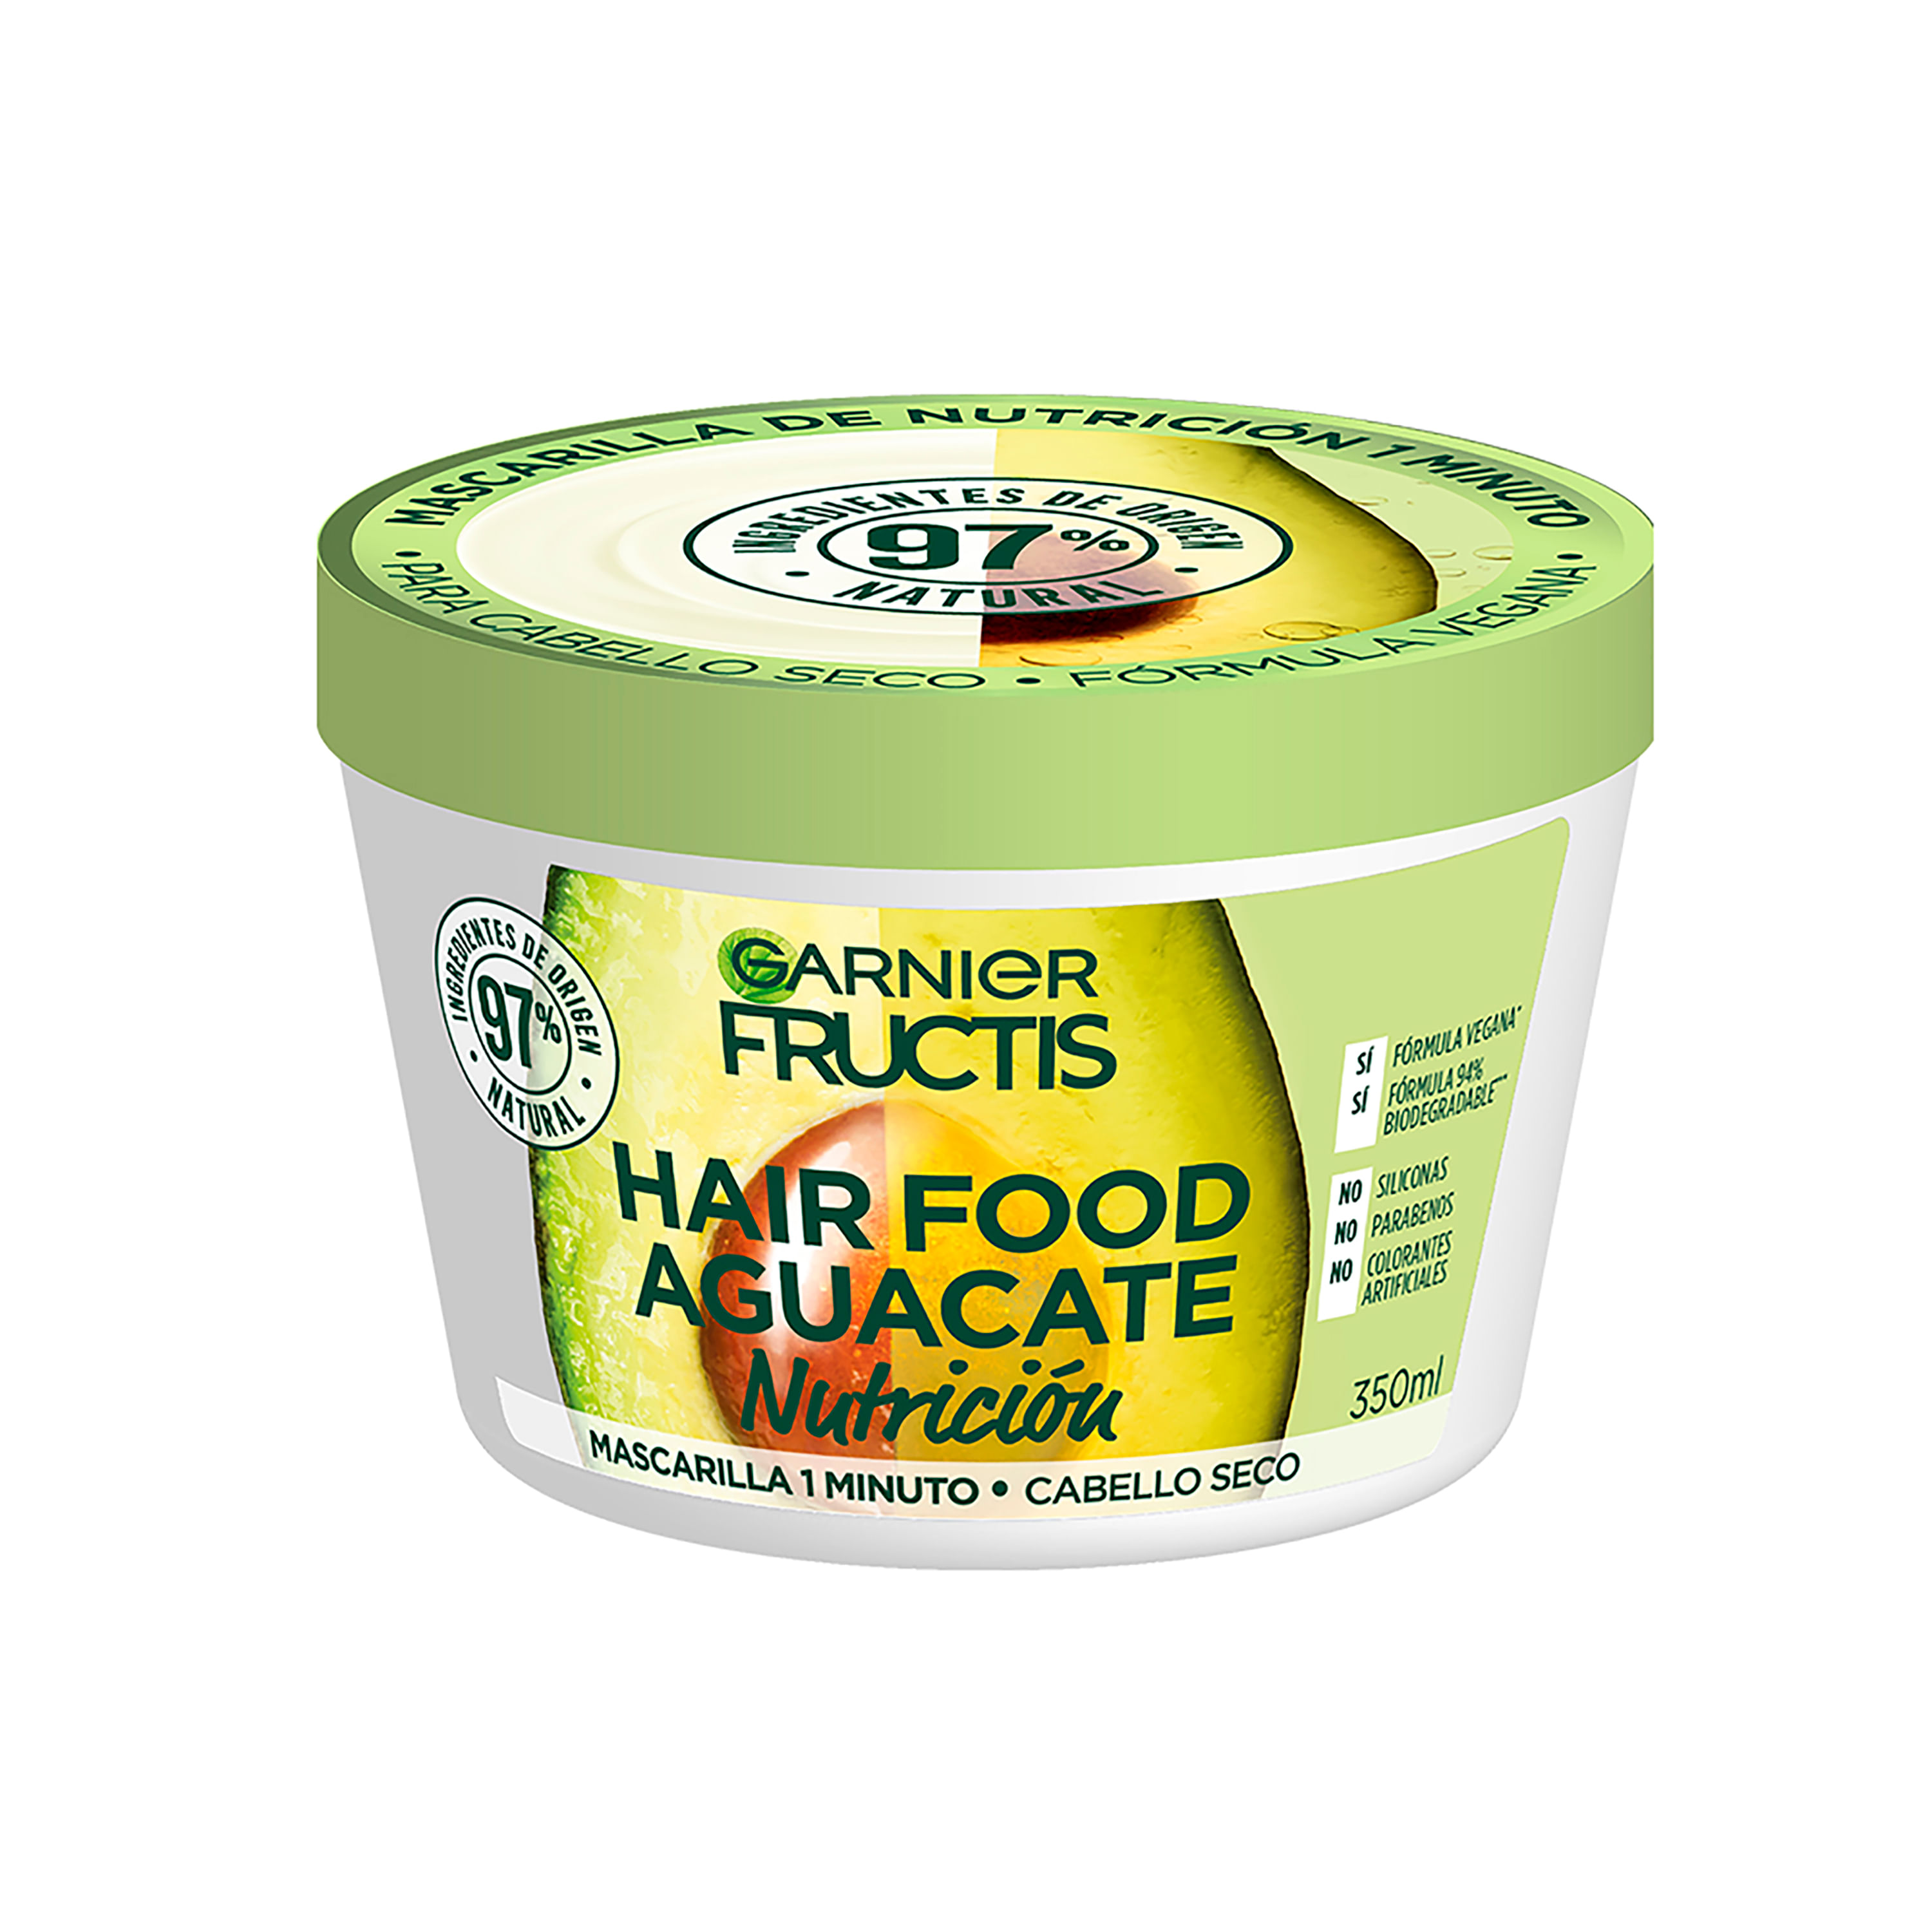 Comprar Hair Food Mascarilla De Nutrición Fructis 350ml | Walmart Costa Rica